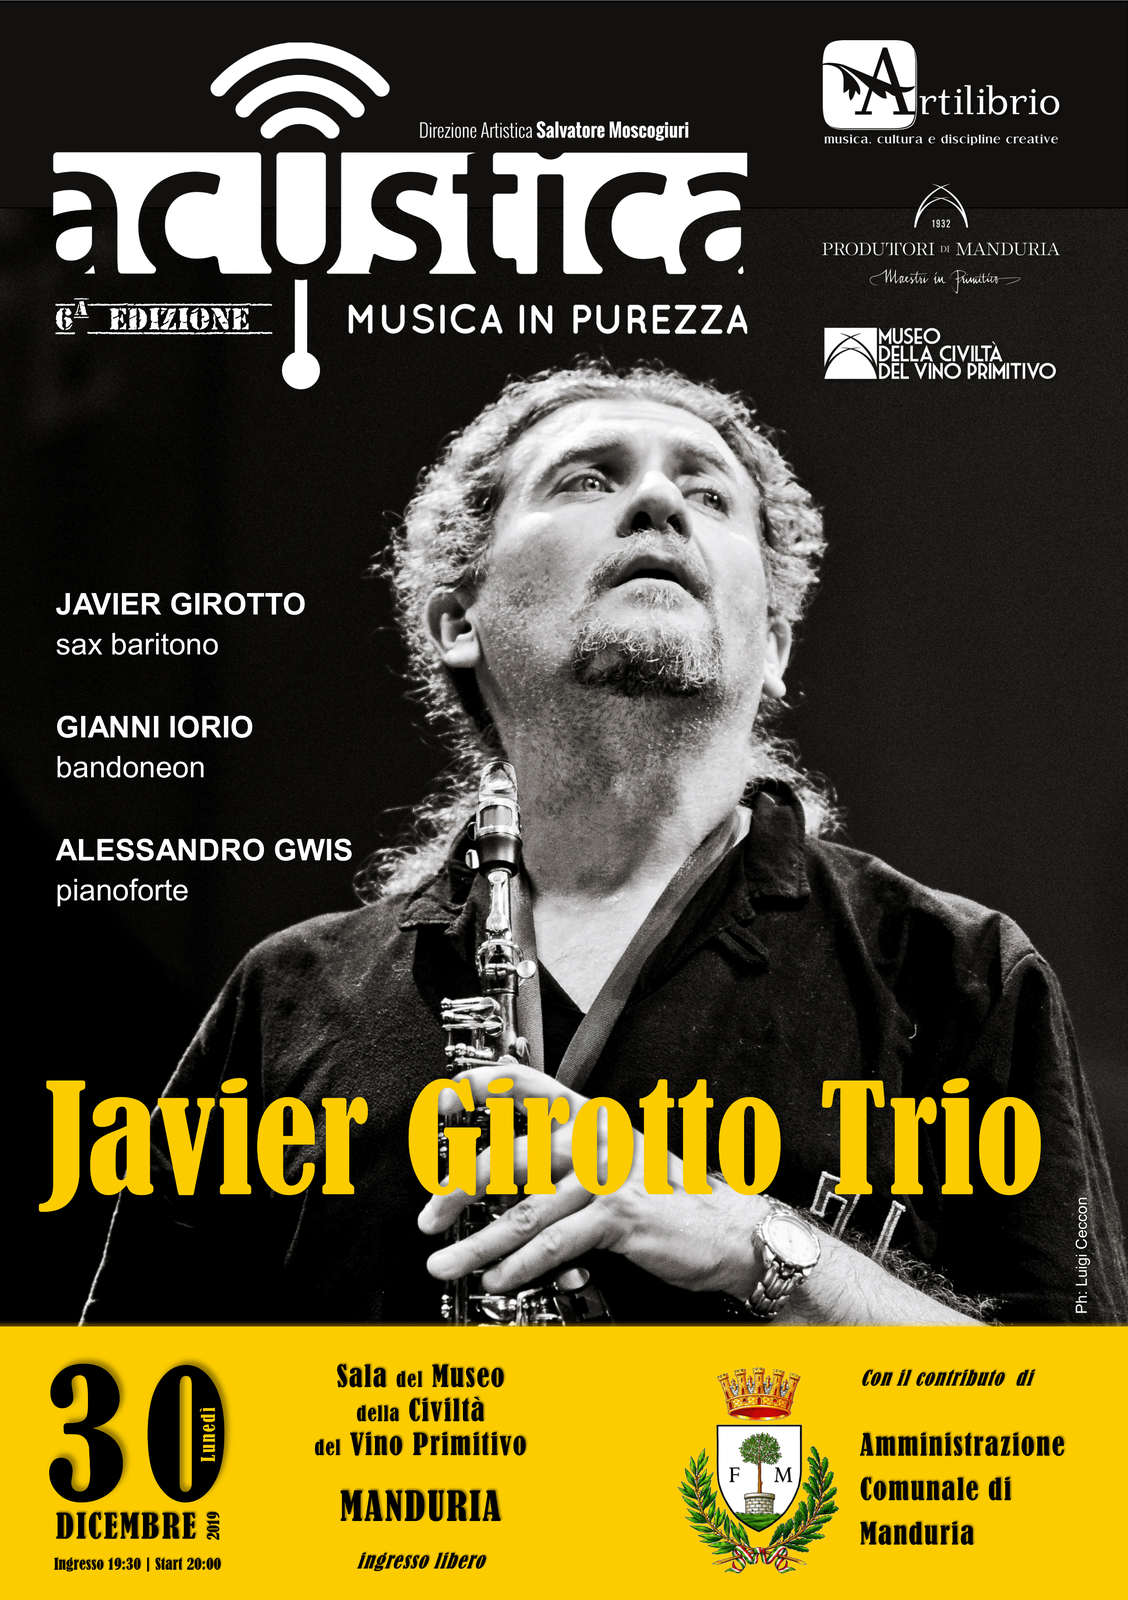 MANDURIA. Ad Acustica in scena un pezzo di storia recente del jazz, con Javier Girotto Trio